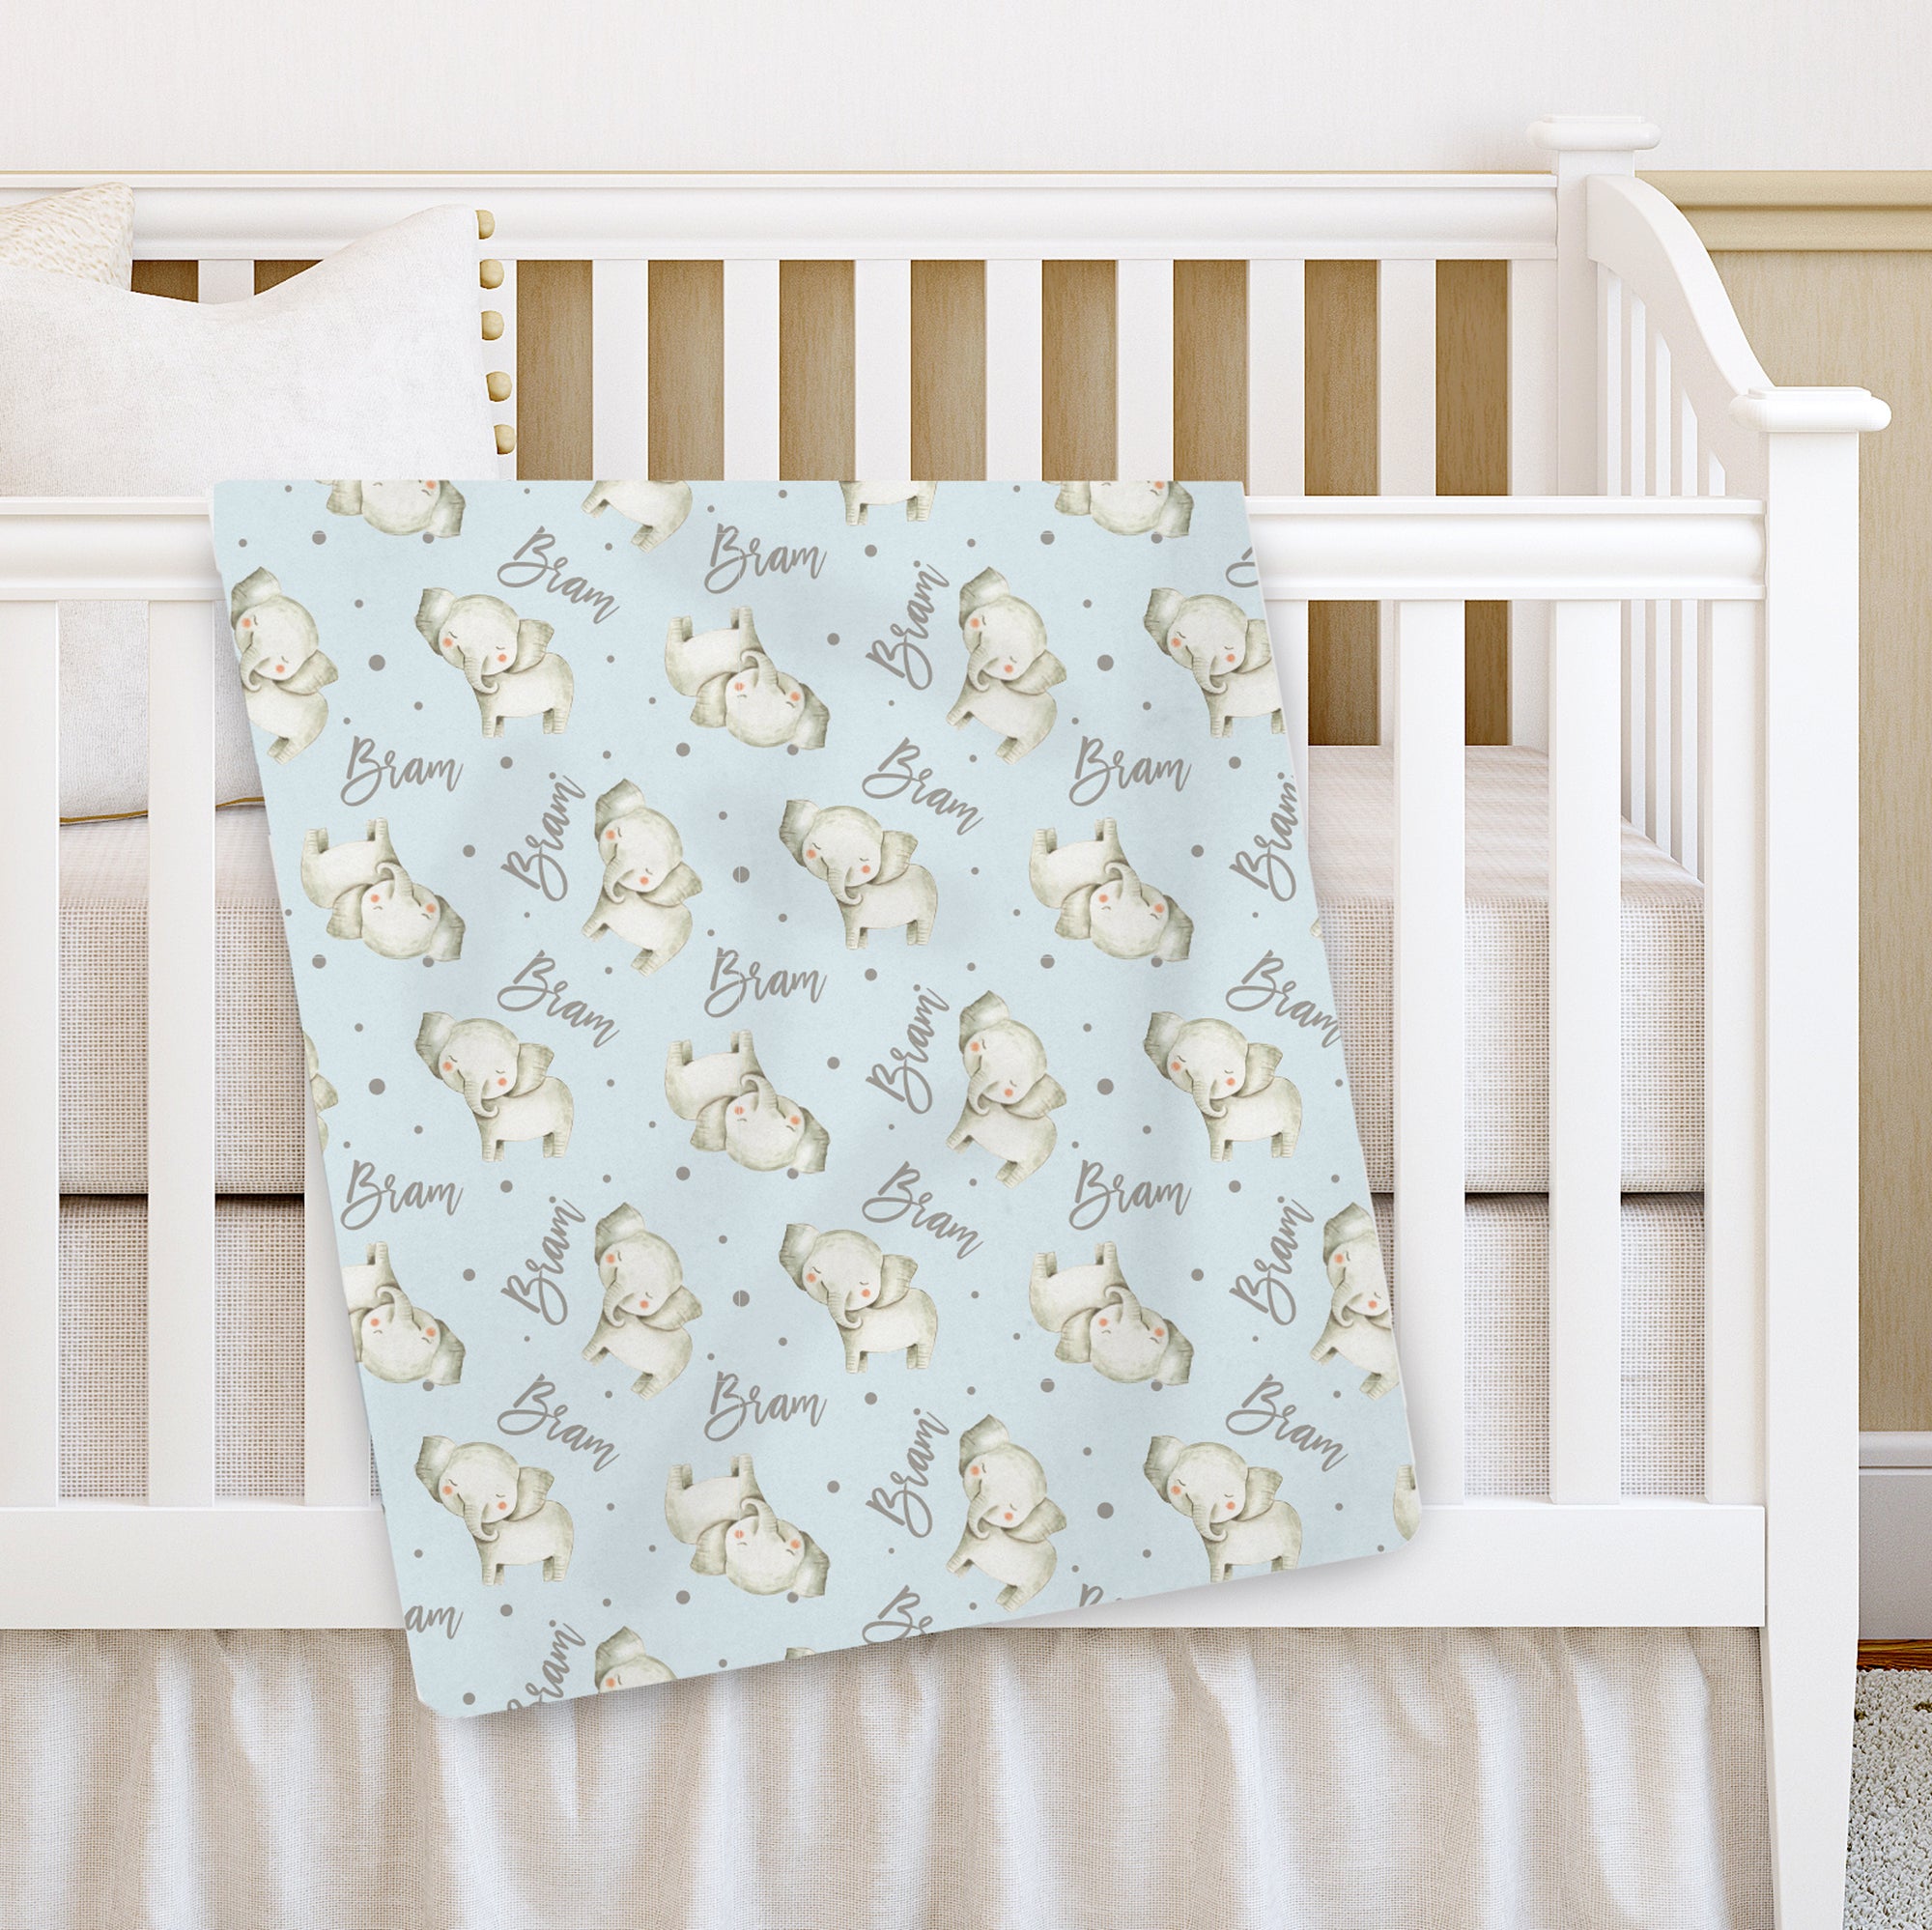 Nursery decor | Great baby shoer gift idea